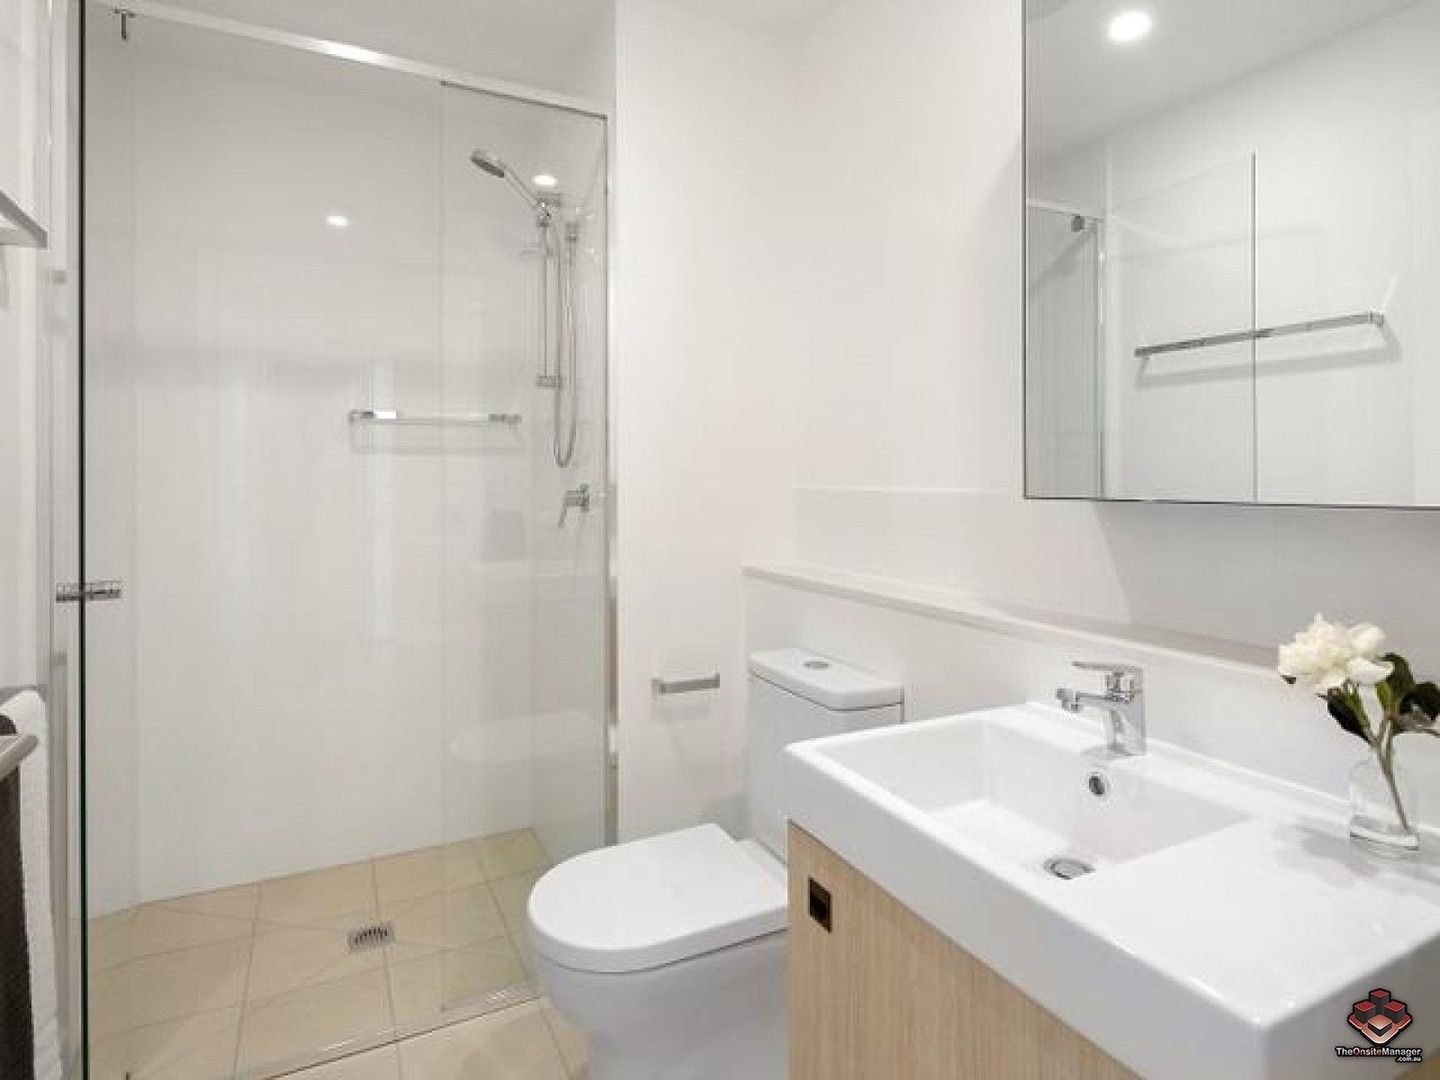 2 bedrooms Apartment / Unit / Flat in ID:21115174/24 Stratton Street NEWSTEAD QLD, 4006